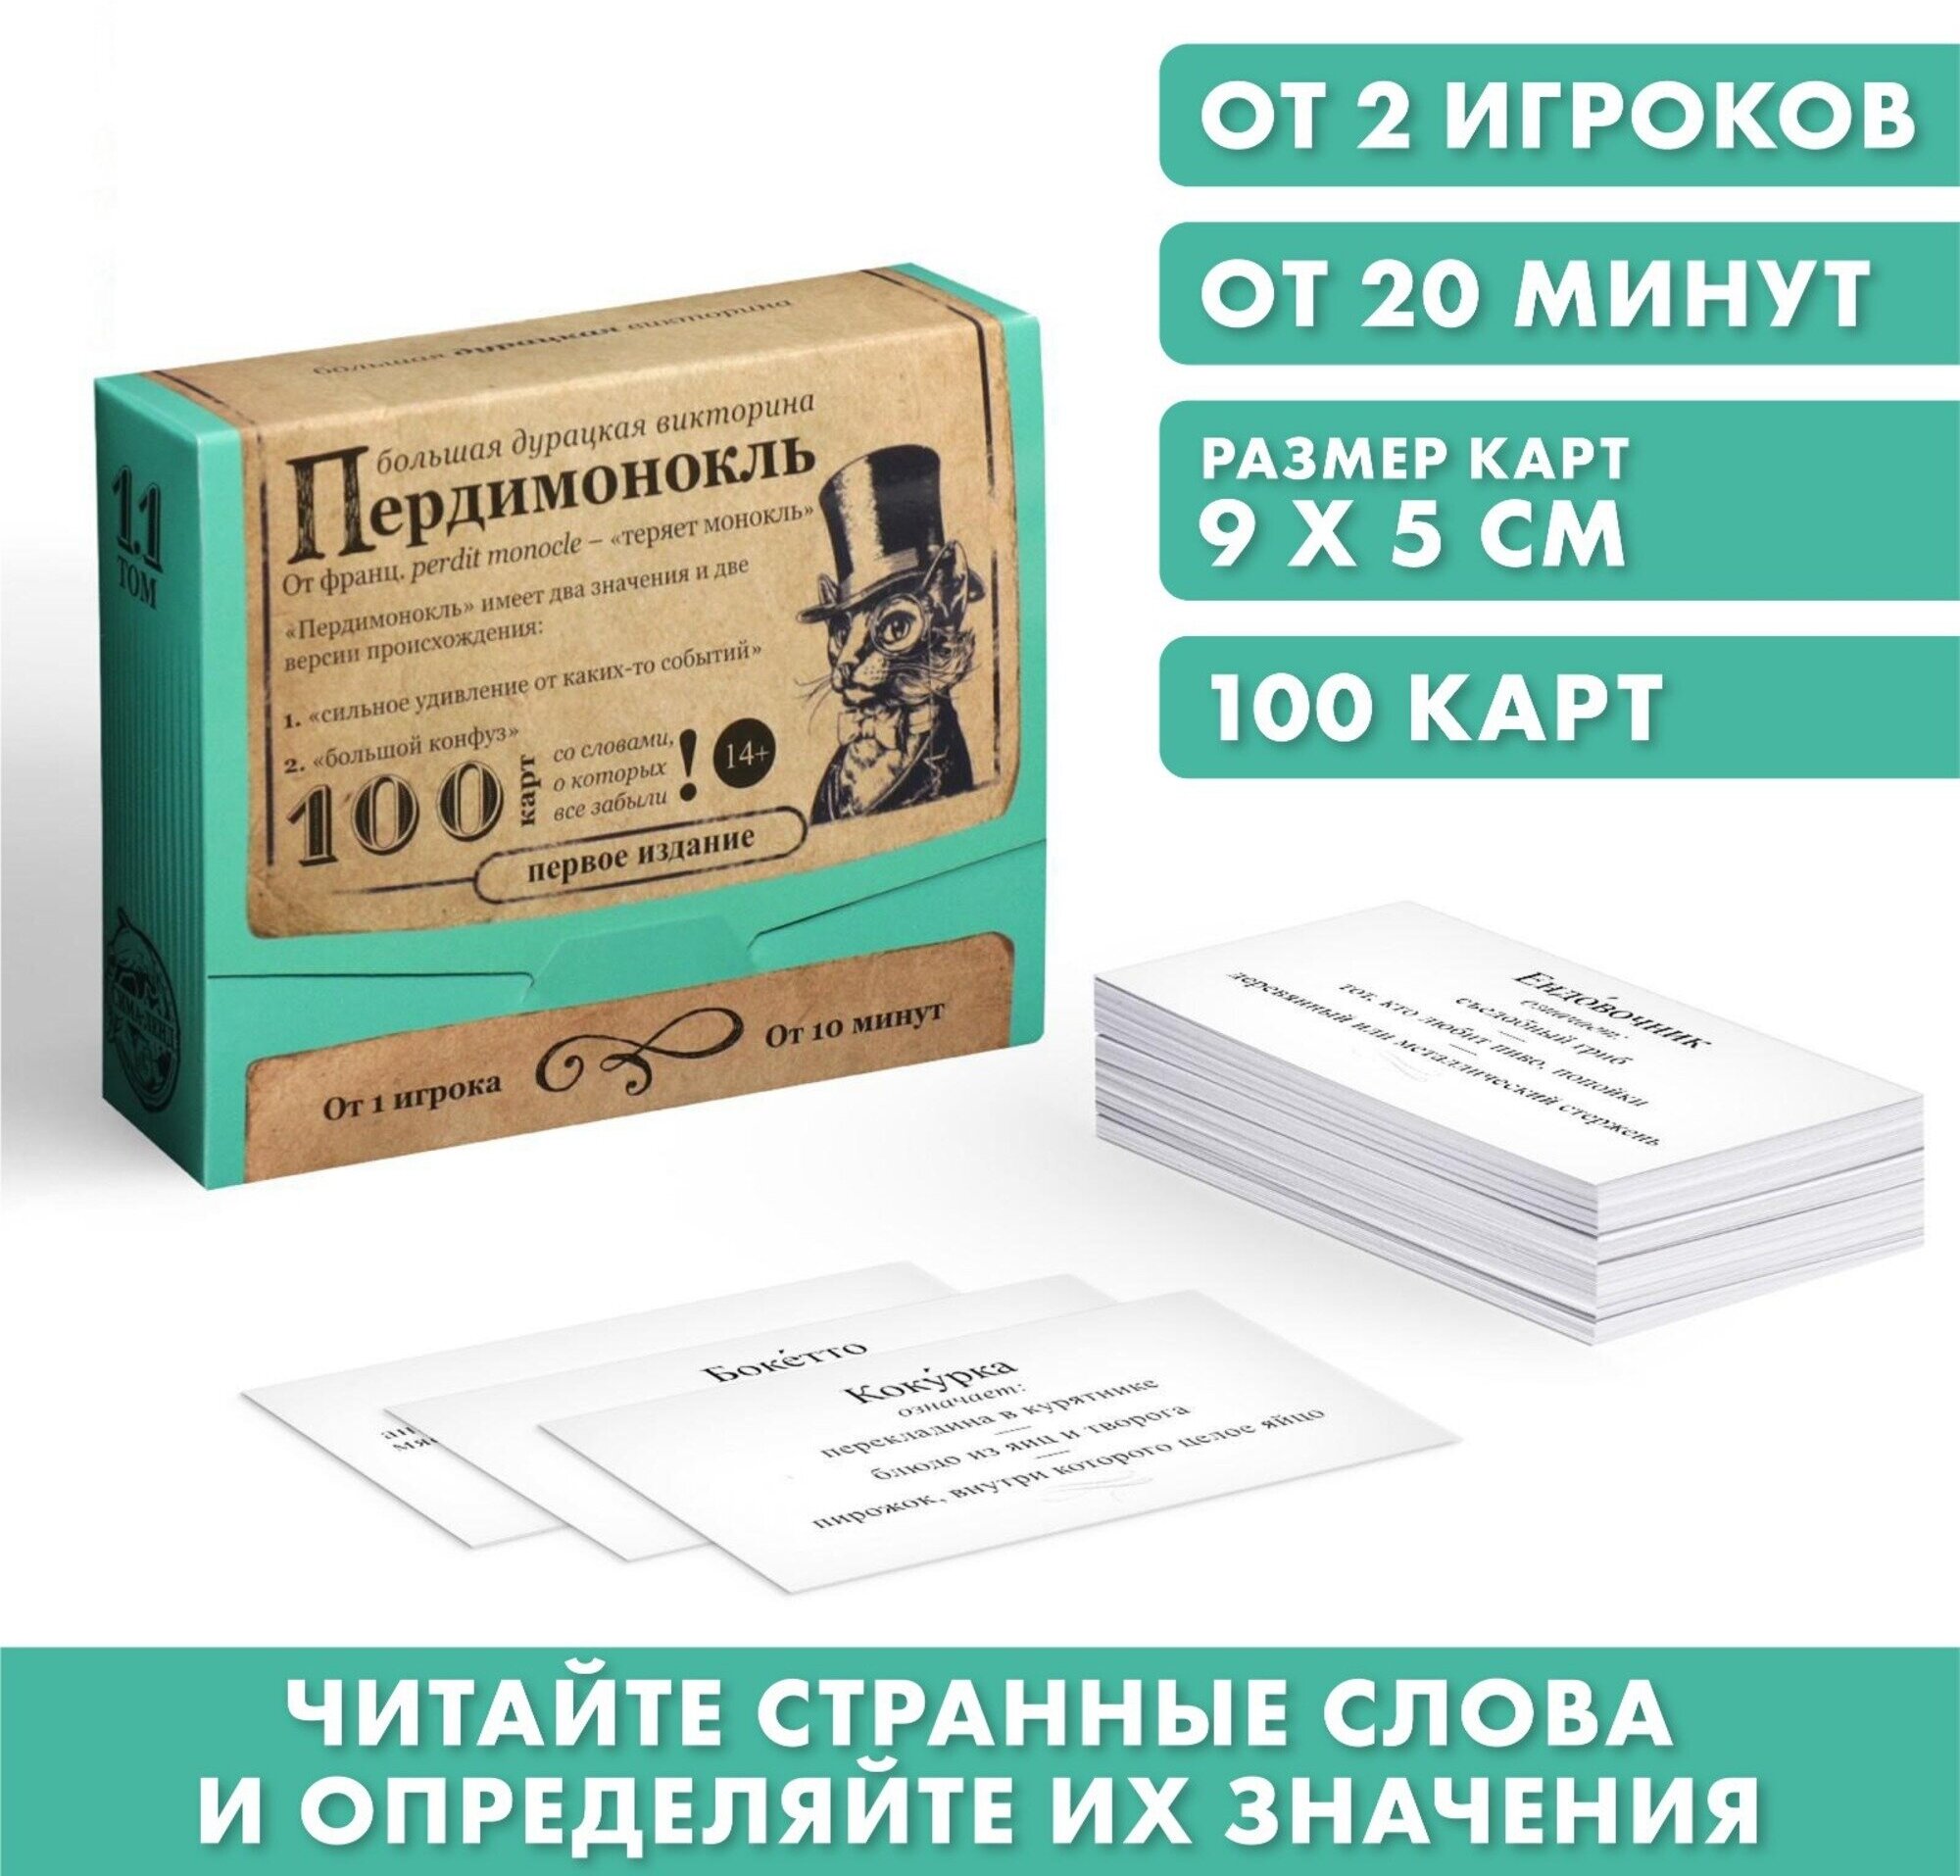 ЛАС играс Большая дурацкая викторина «Пердимонокль. Том 11», 100 карт